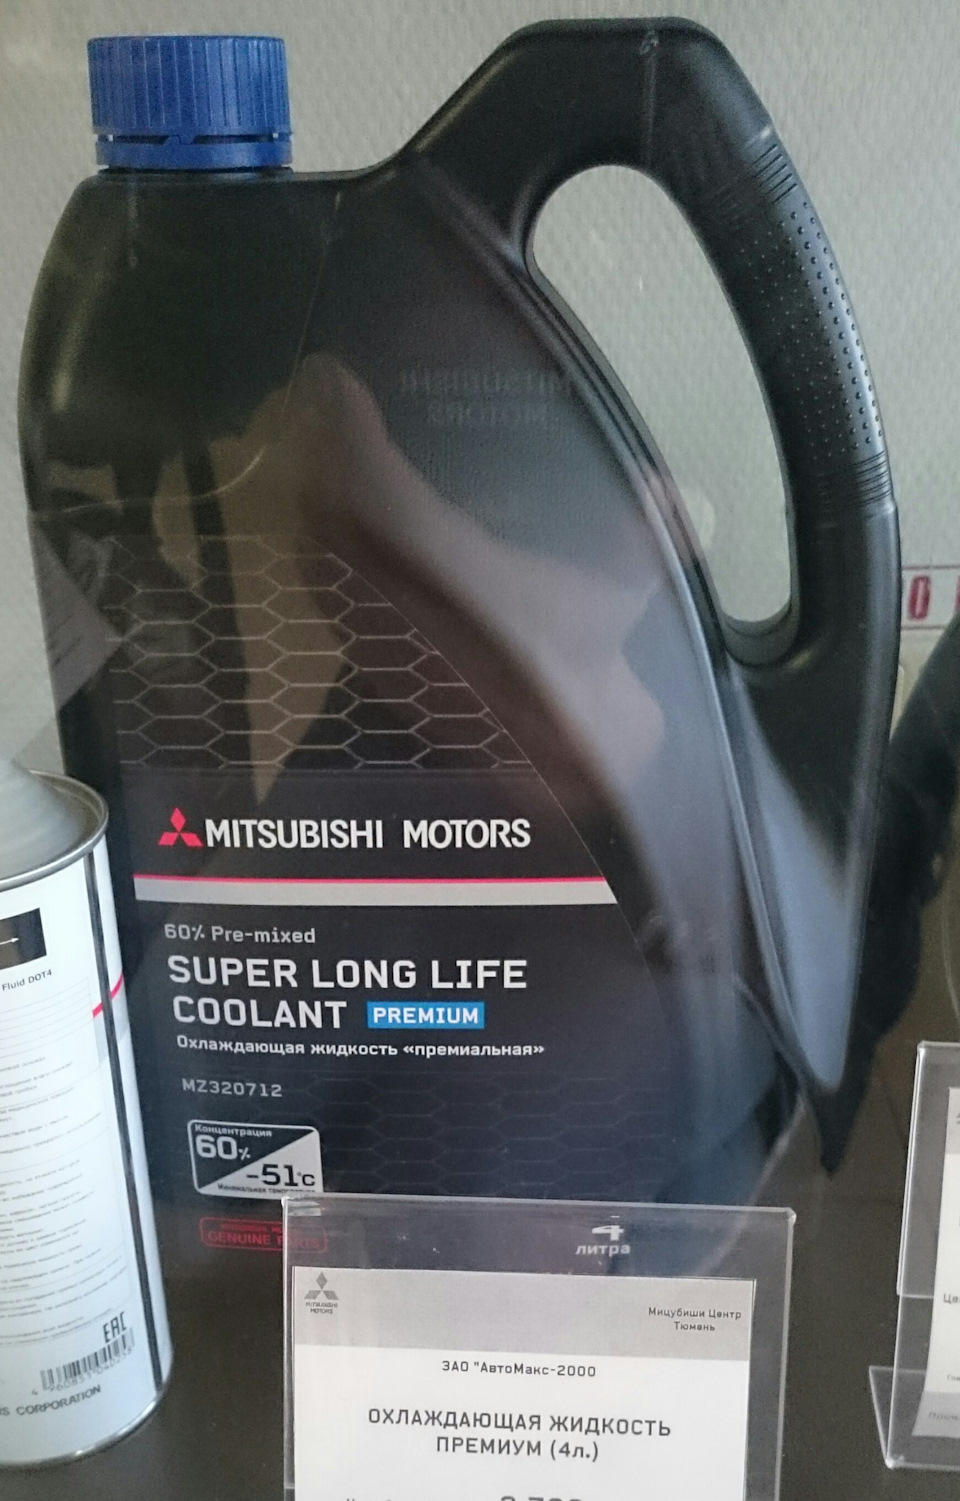 Mitsubishi coolant